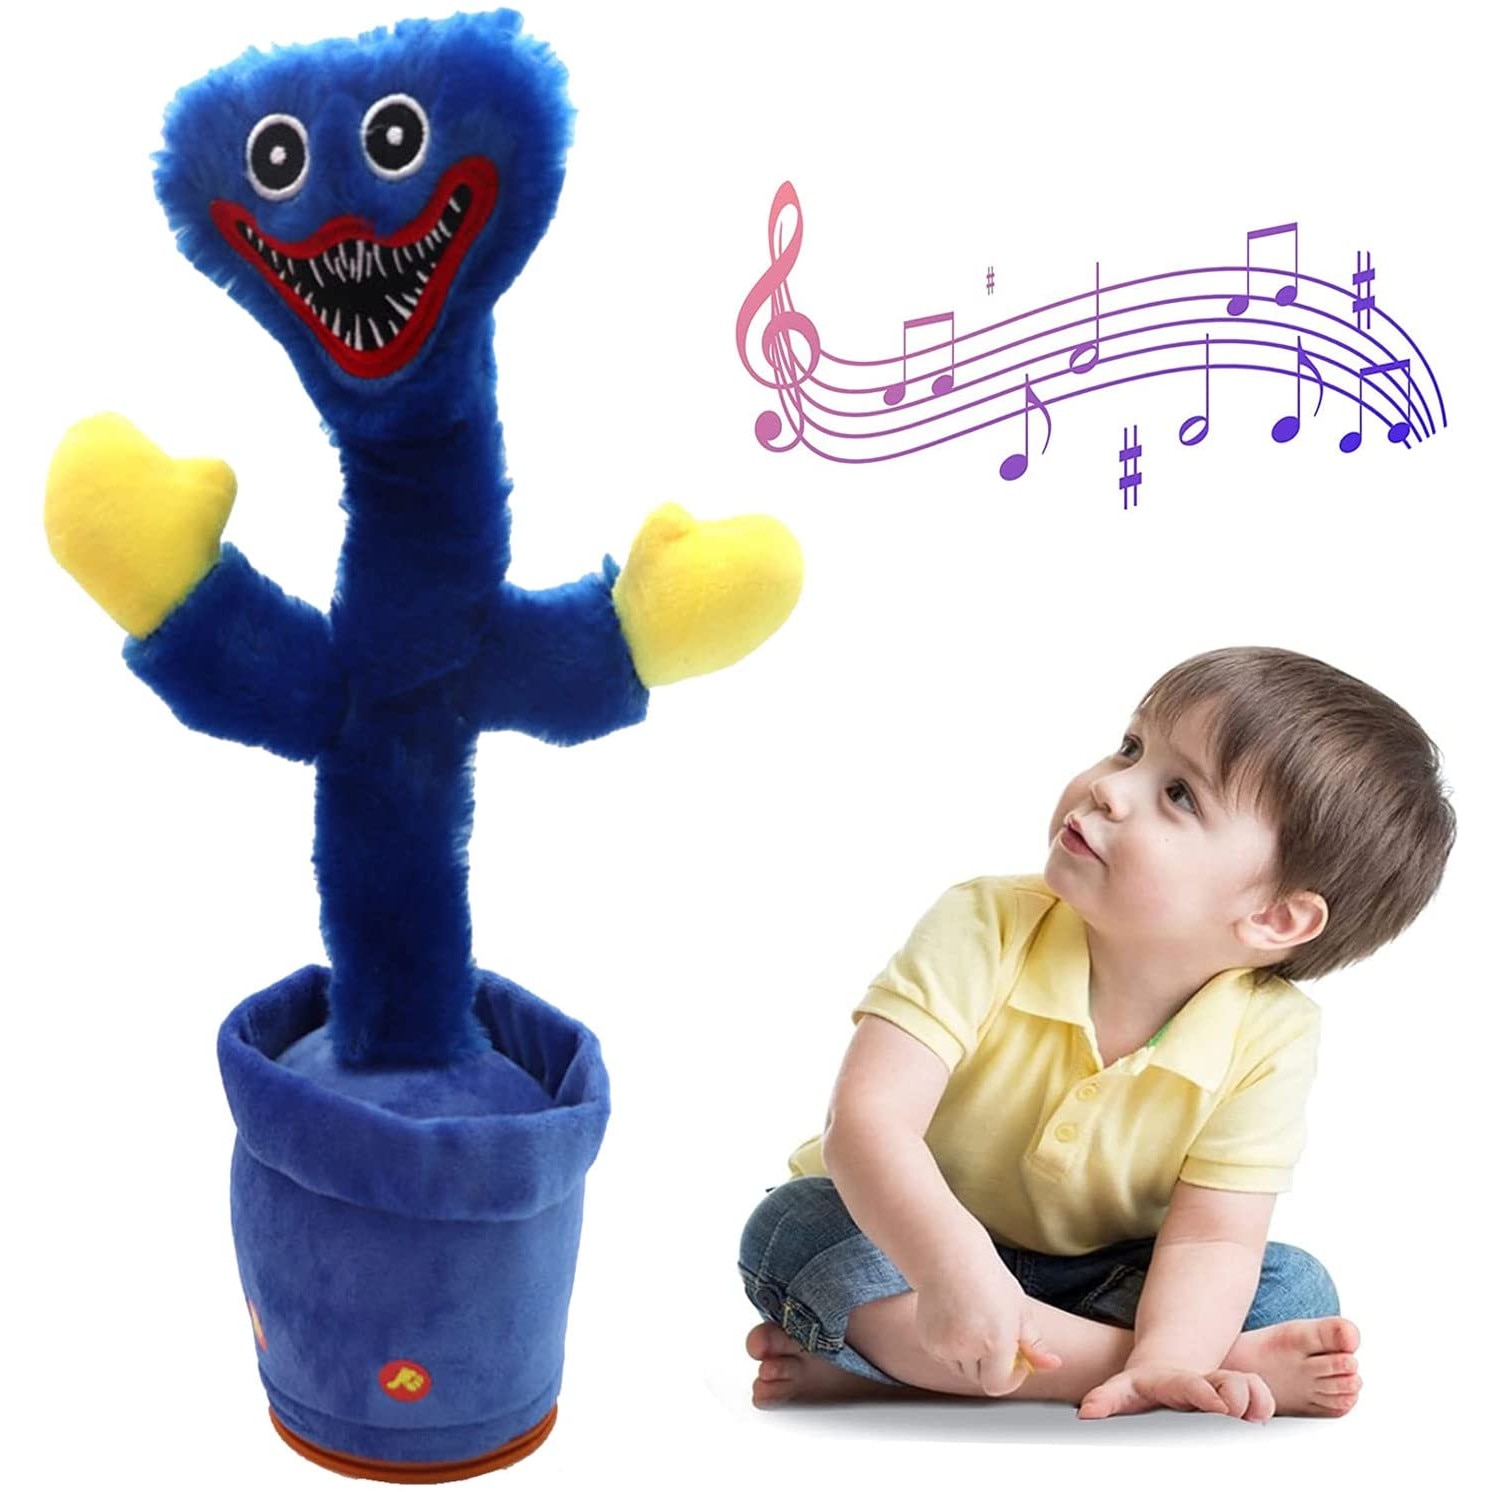 Пляшущая игрушка. Танцующие игрушки для детей. Танцующая игрушка. Танцующие игрушки для детей музыкальные. Танцующая мягкая игрушка для детей.